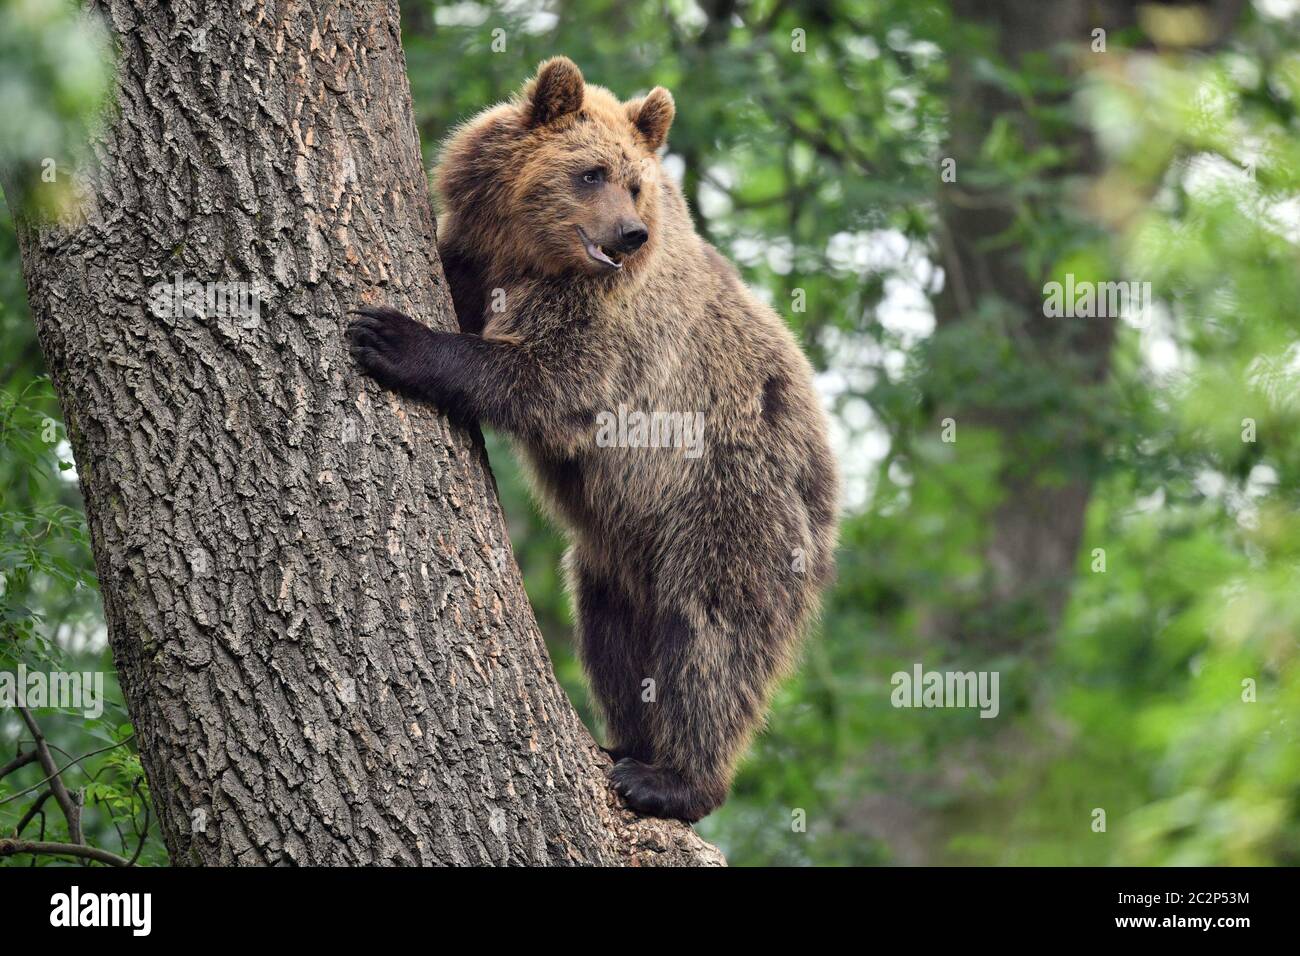 Ein Bär klettert als vier europäische Braunbären und fünf graue Wölfe auf einen Baum, die zum ersten Mal in Bear Wood, einem neuen Gehege im Bristol Zoo's Wild Place Projekt, in britischen Wäldern zusammenleben. Stockfoto